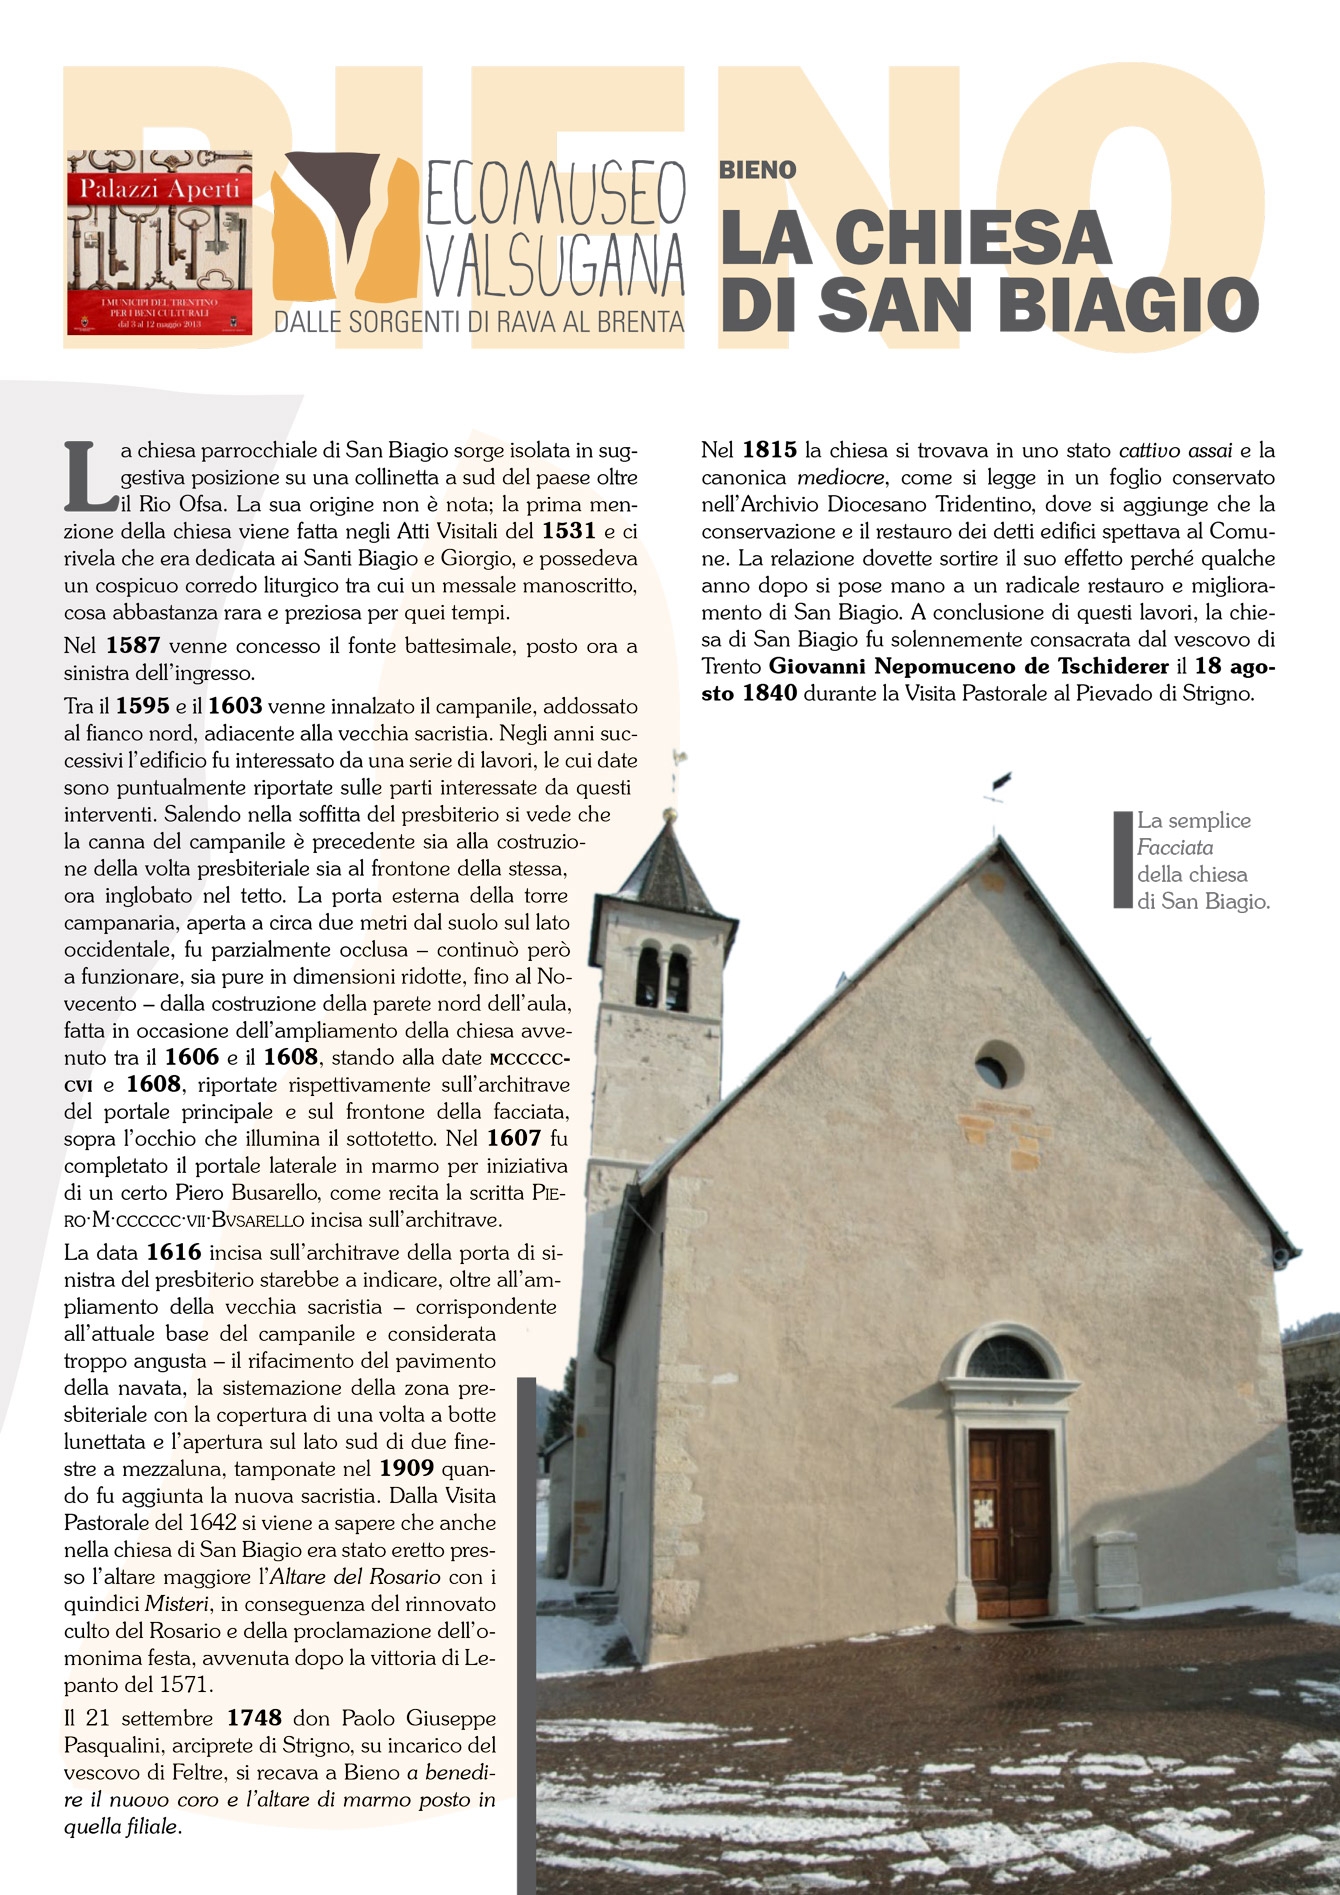 Bieno: la chiesa di San Biagio